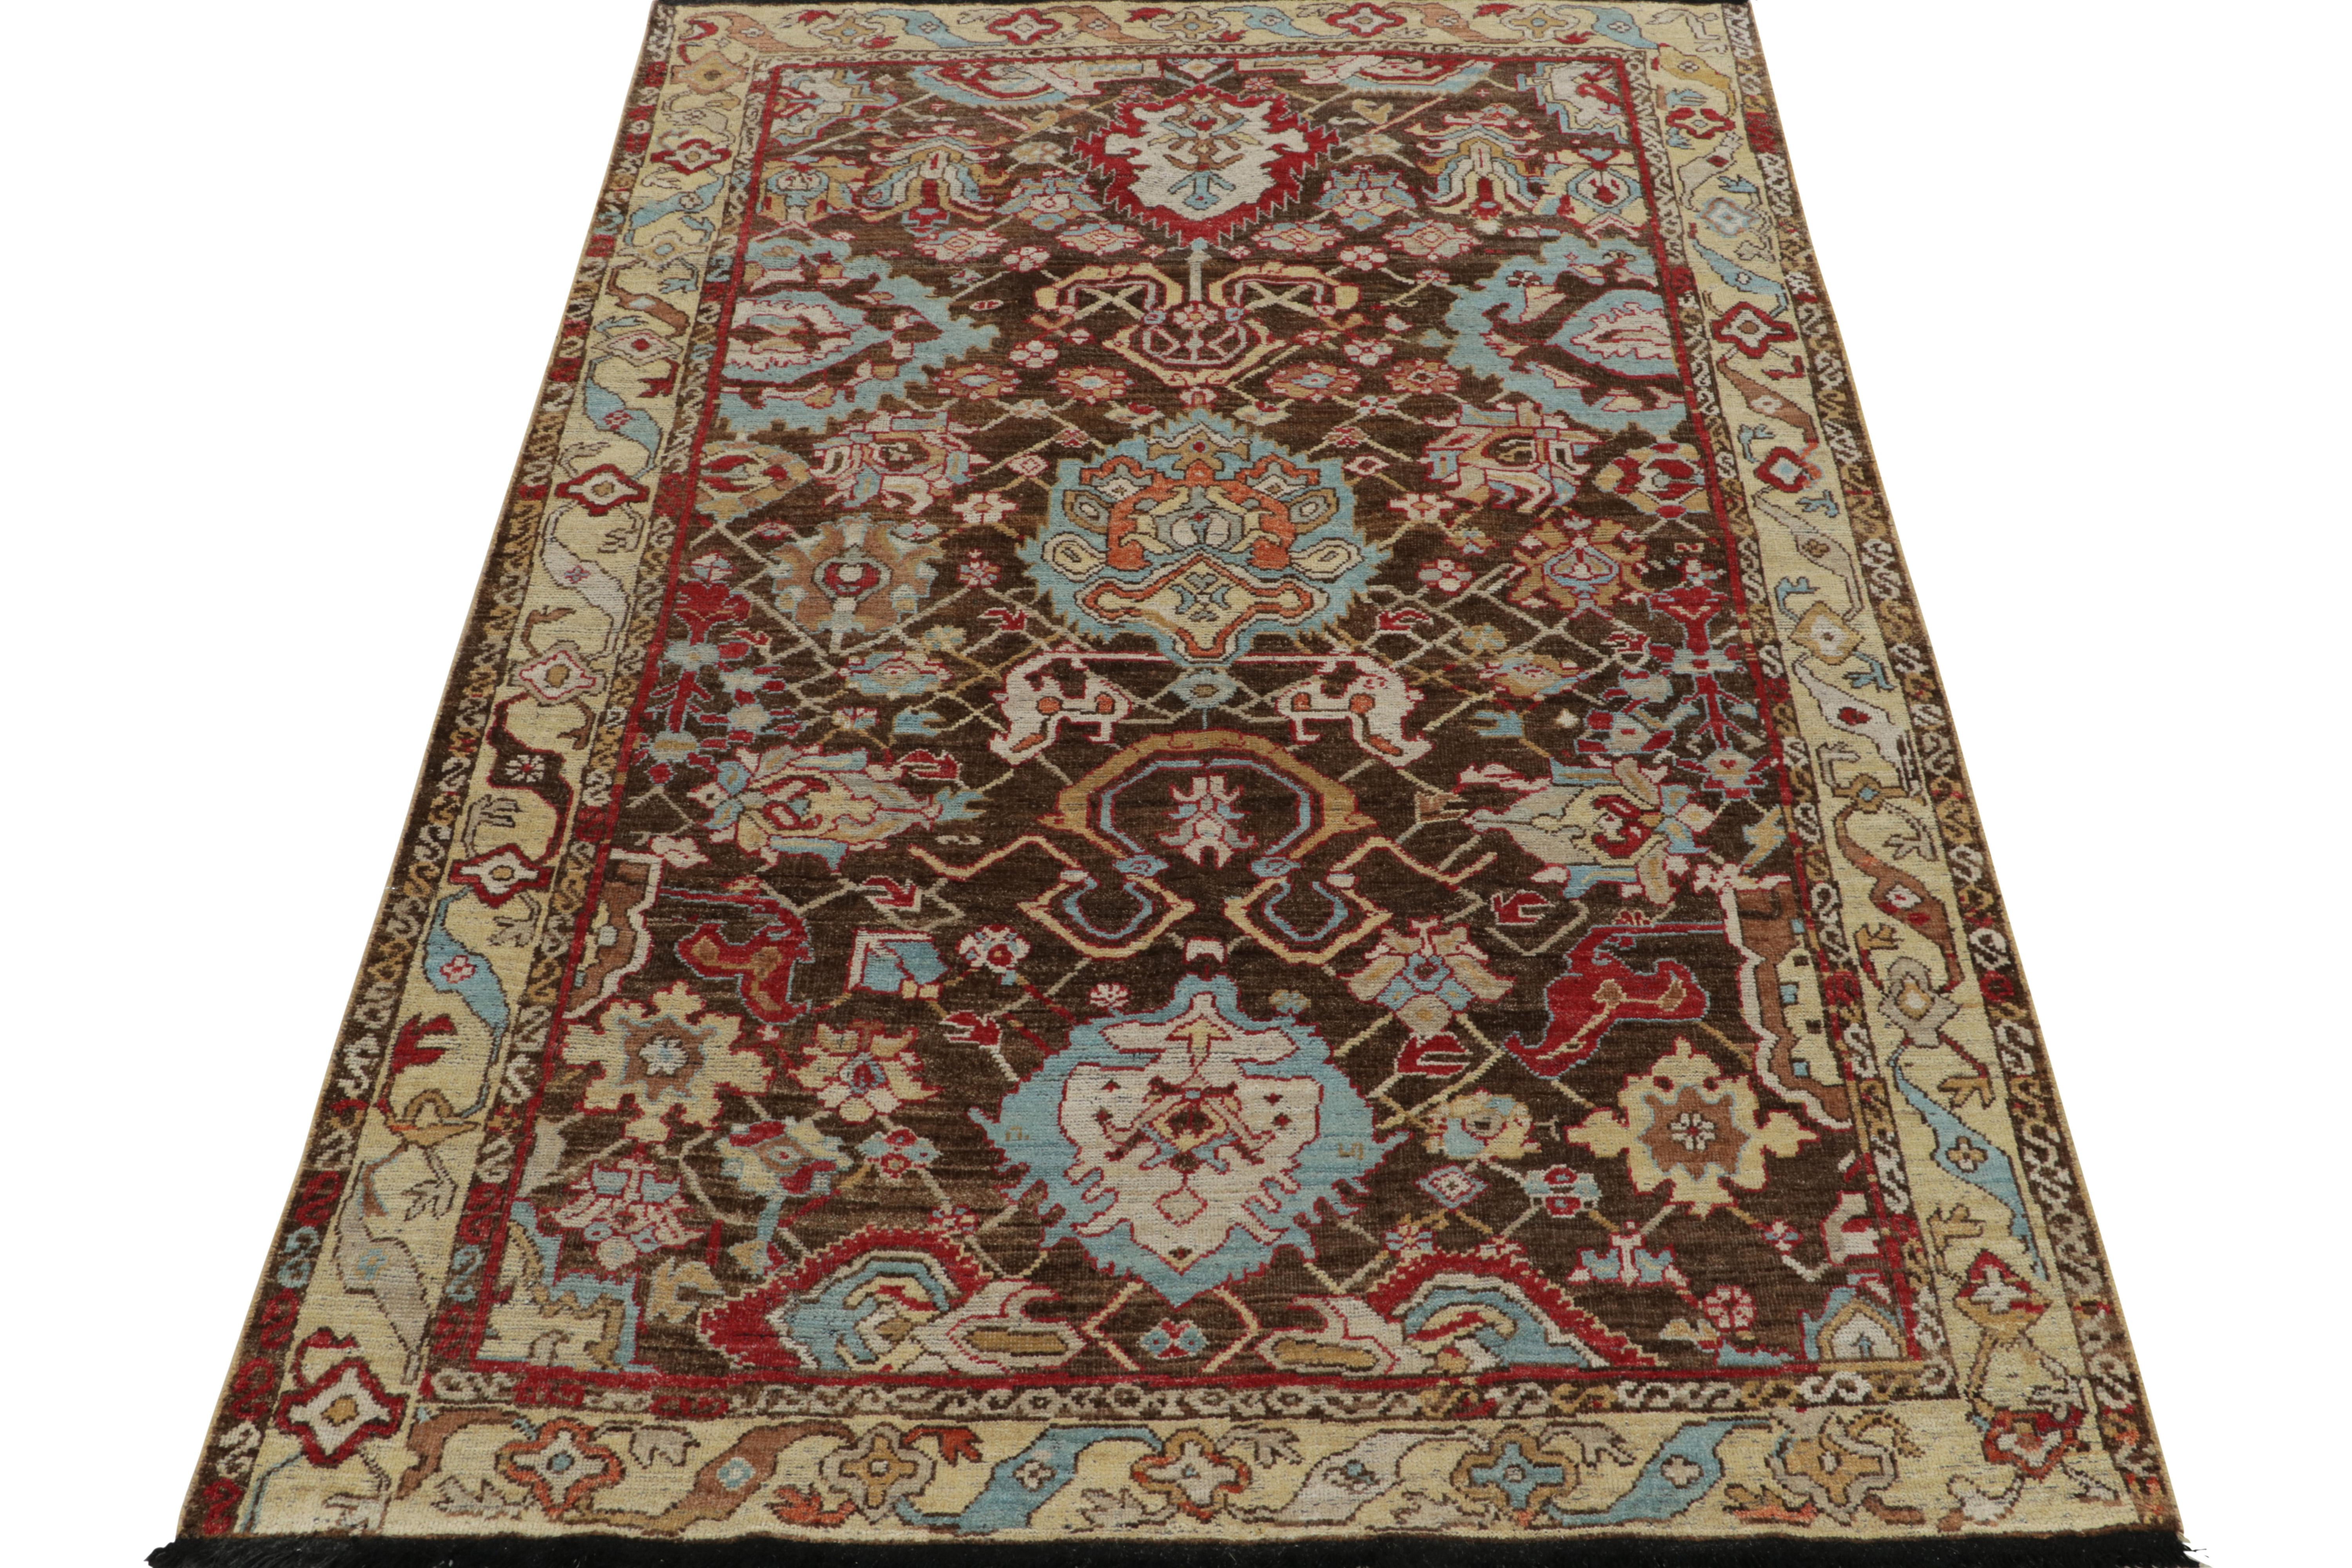 Noué à la main en laine, ce tapis 6x8 est une ode à l'esthétique classique des tapis caucasiens du 18e siècle. Il fait partie de la vaste collection Burano de Rug & Kilim. 

Le tapis s'inspire des motifs de palmettes antiques et présente un